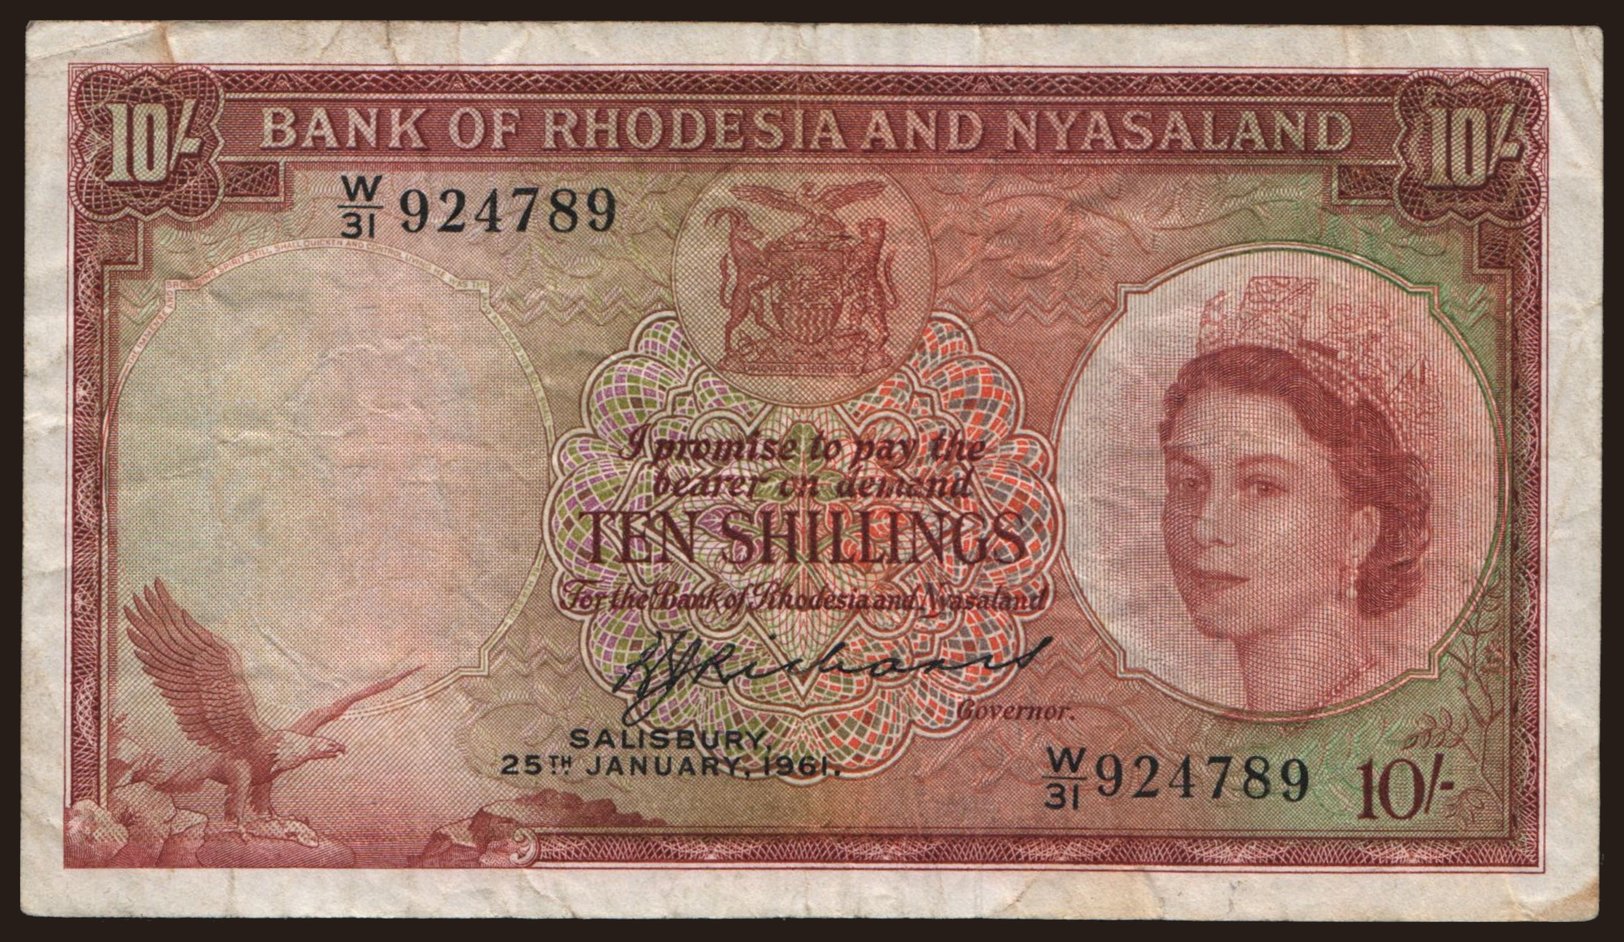 Rhodesia and Nyasaland, 10 shillings, 1961